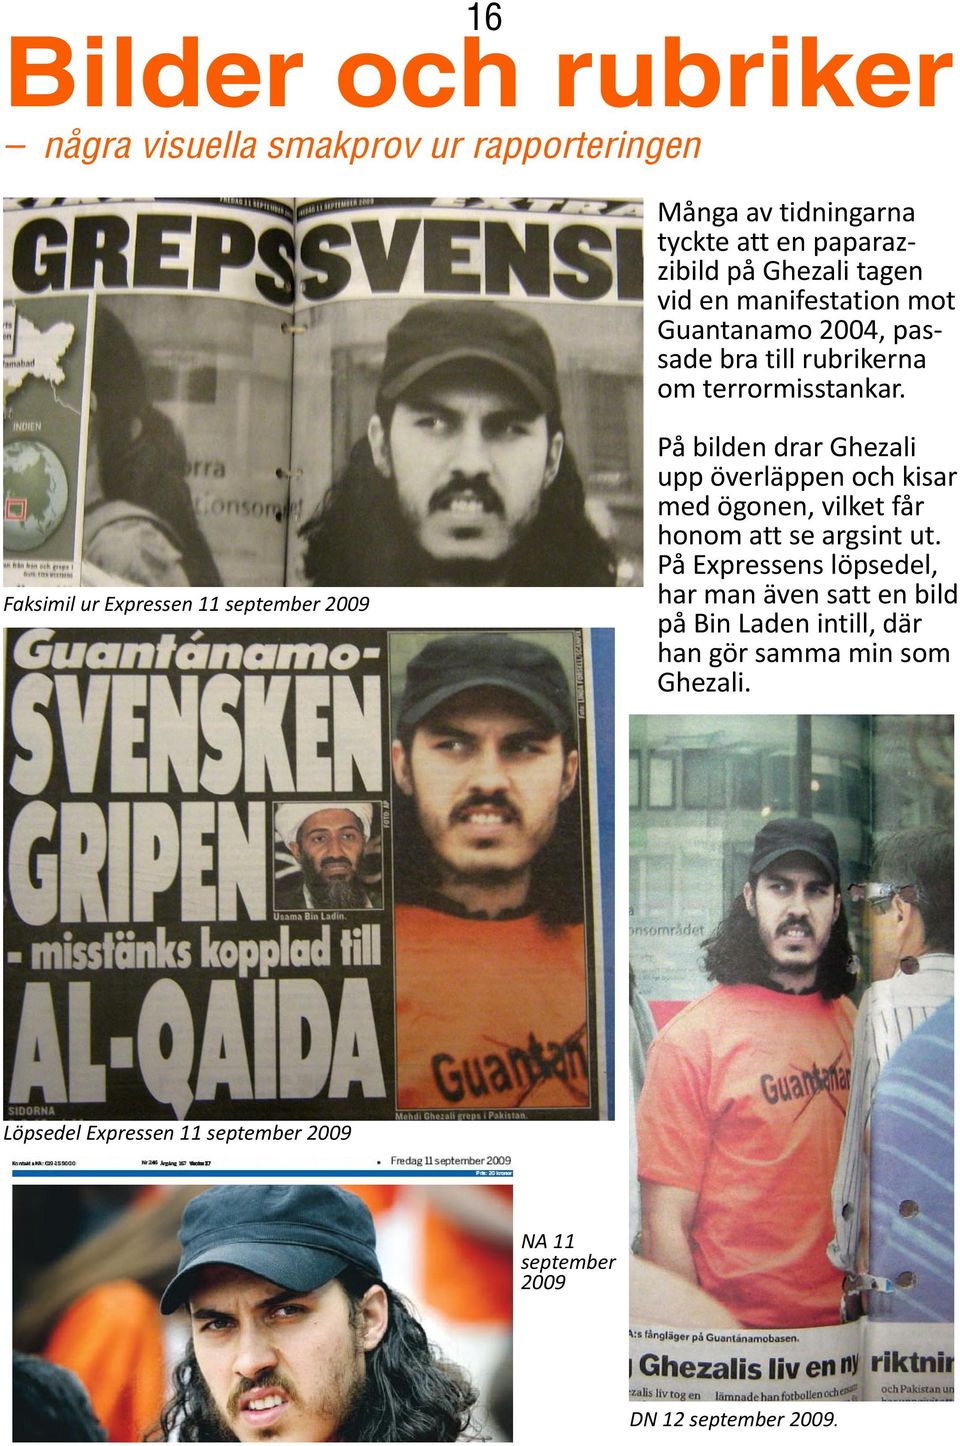 Faksimil ur Expressen 11 september 2009 På bilden drar Ghezali upp överläppen och kisar med ögonen, vilket får honom att se argsint ut.